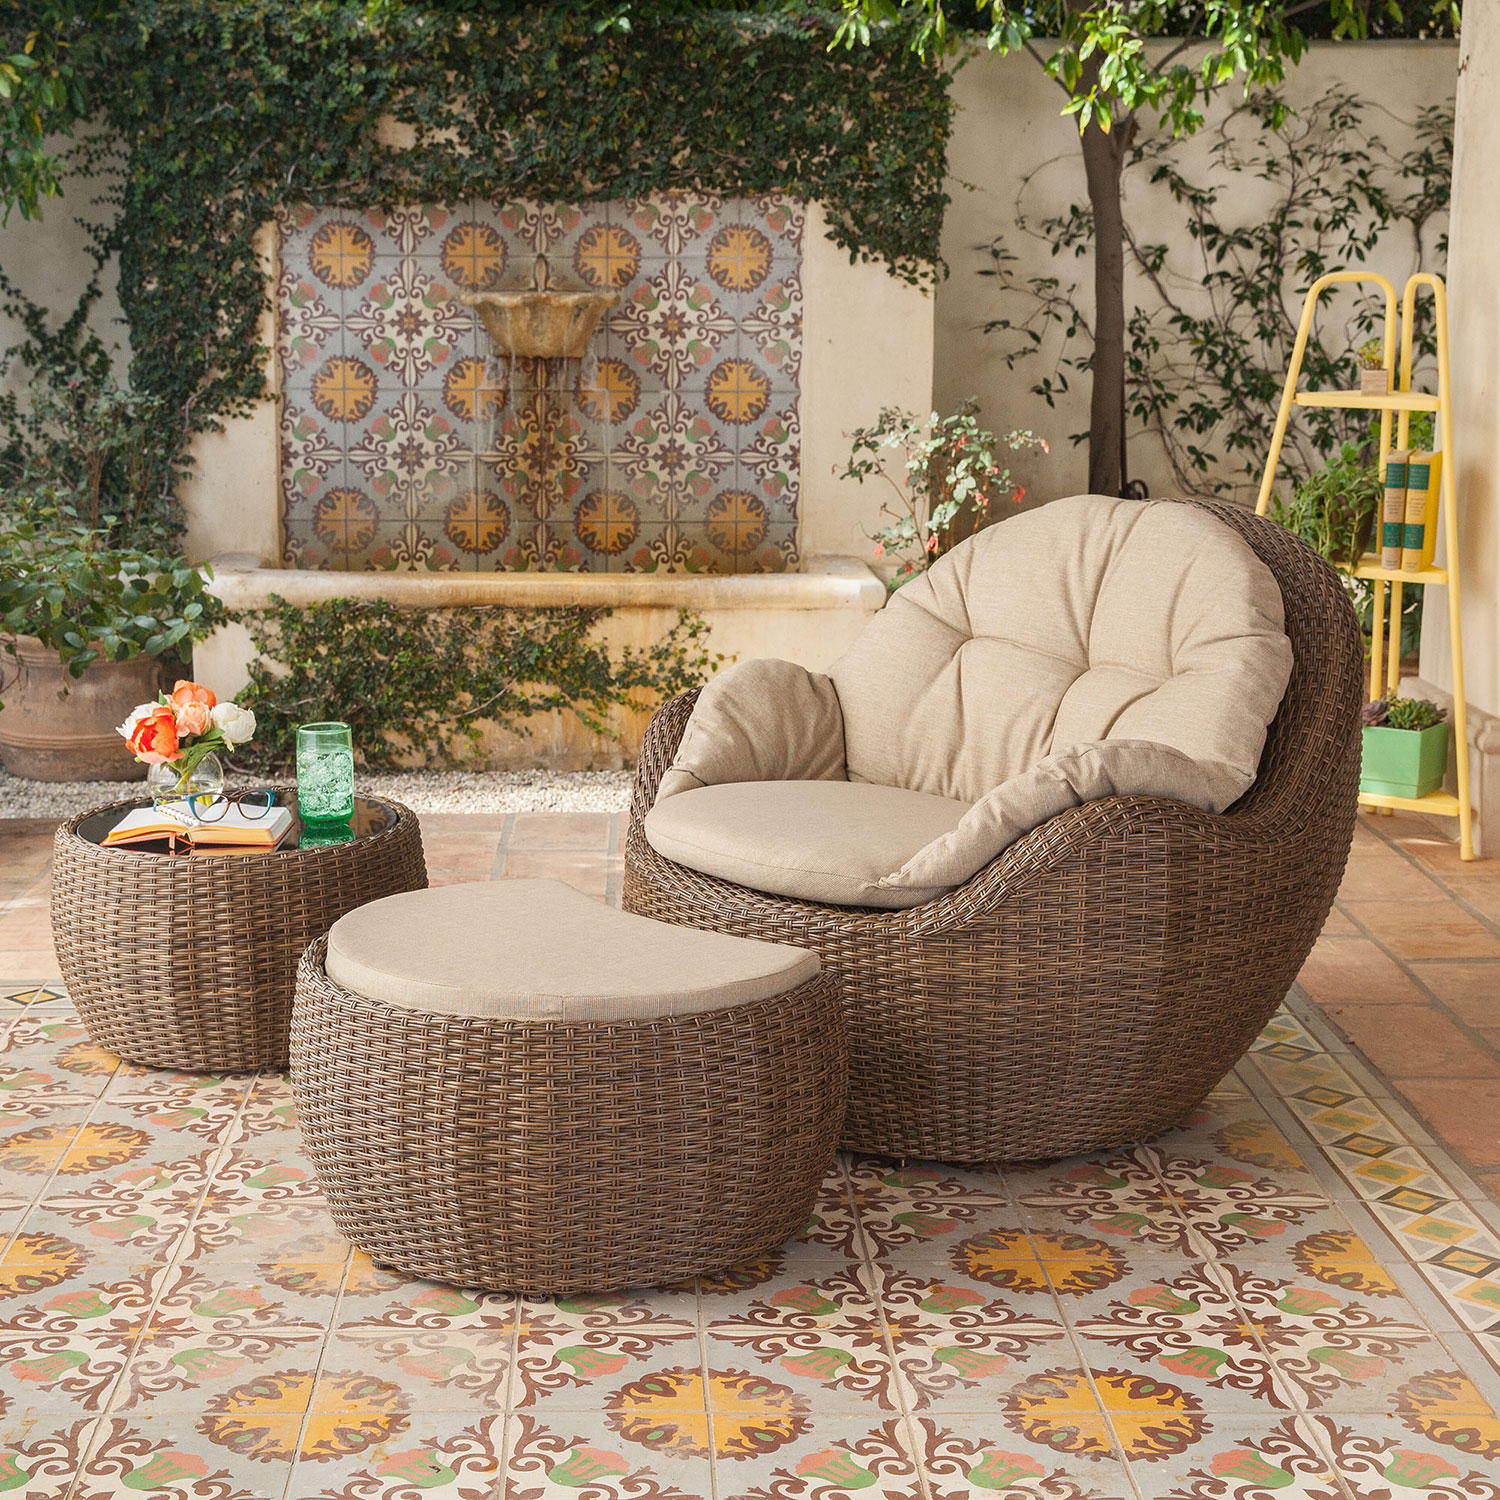 Royal Garden Kenton 3-Piece Wicker Outdoor Seating Set with Ottoman